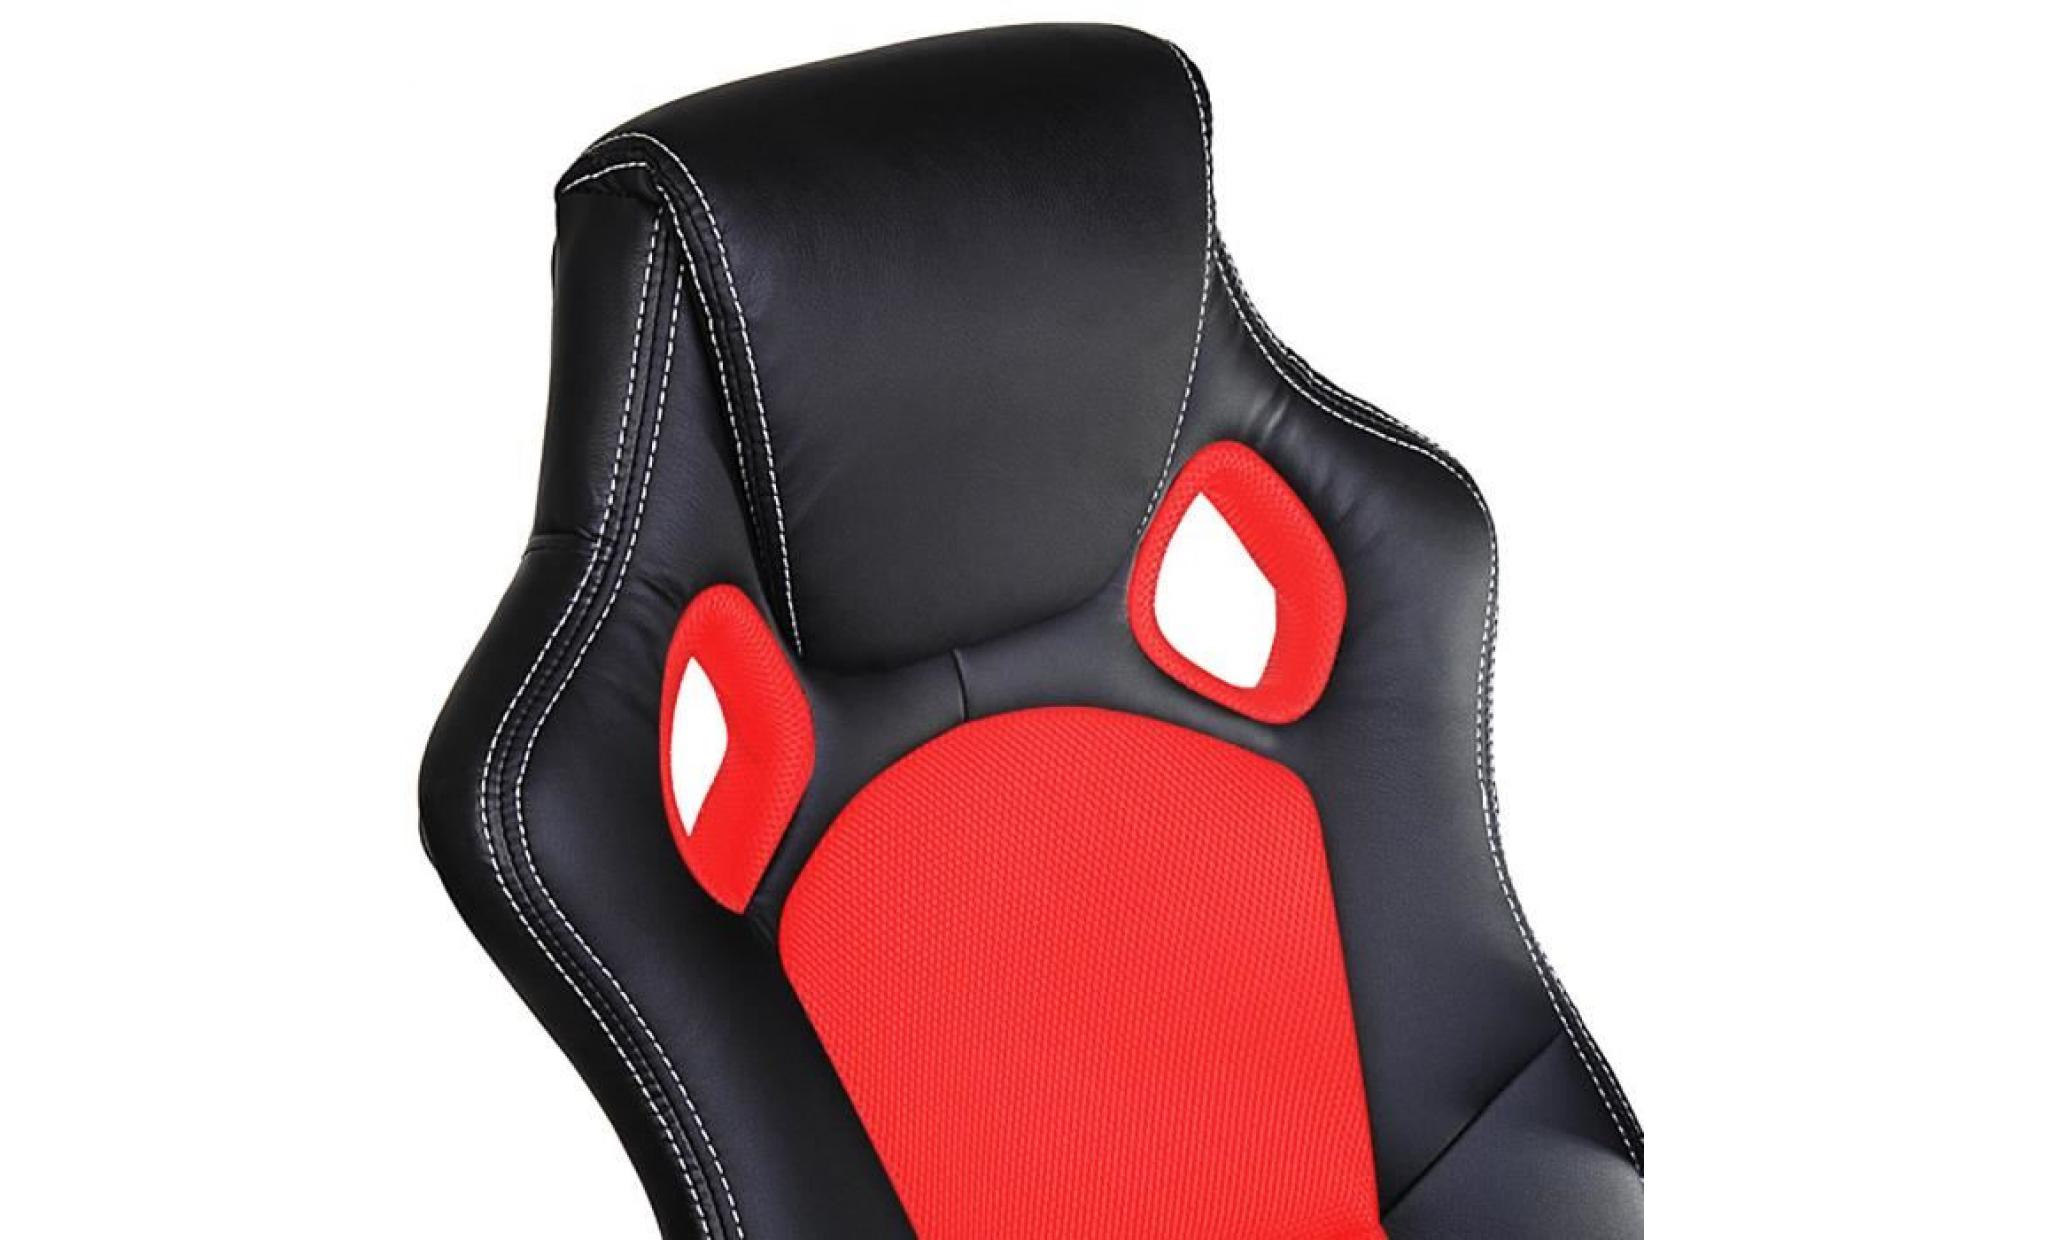 fauteuil de bureau rouge et noir   sport   chaise bureau roues racing rembourrée pas cher